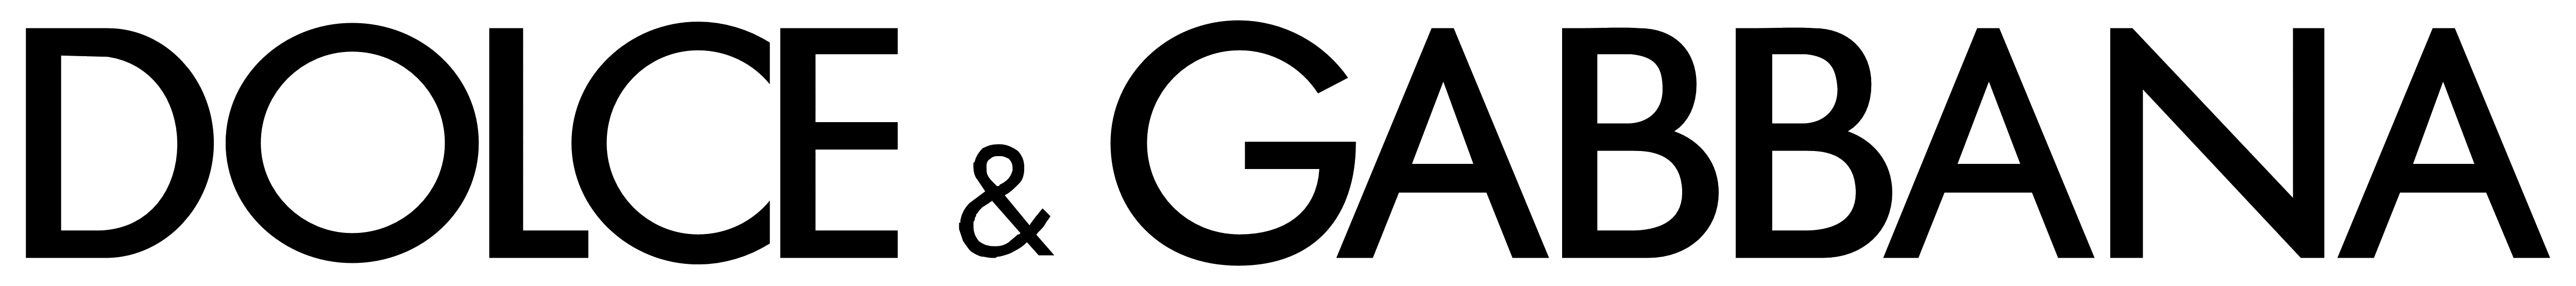 Dolce & Gabbana – Logos Download